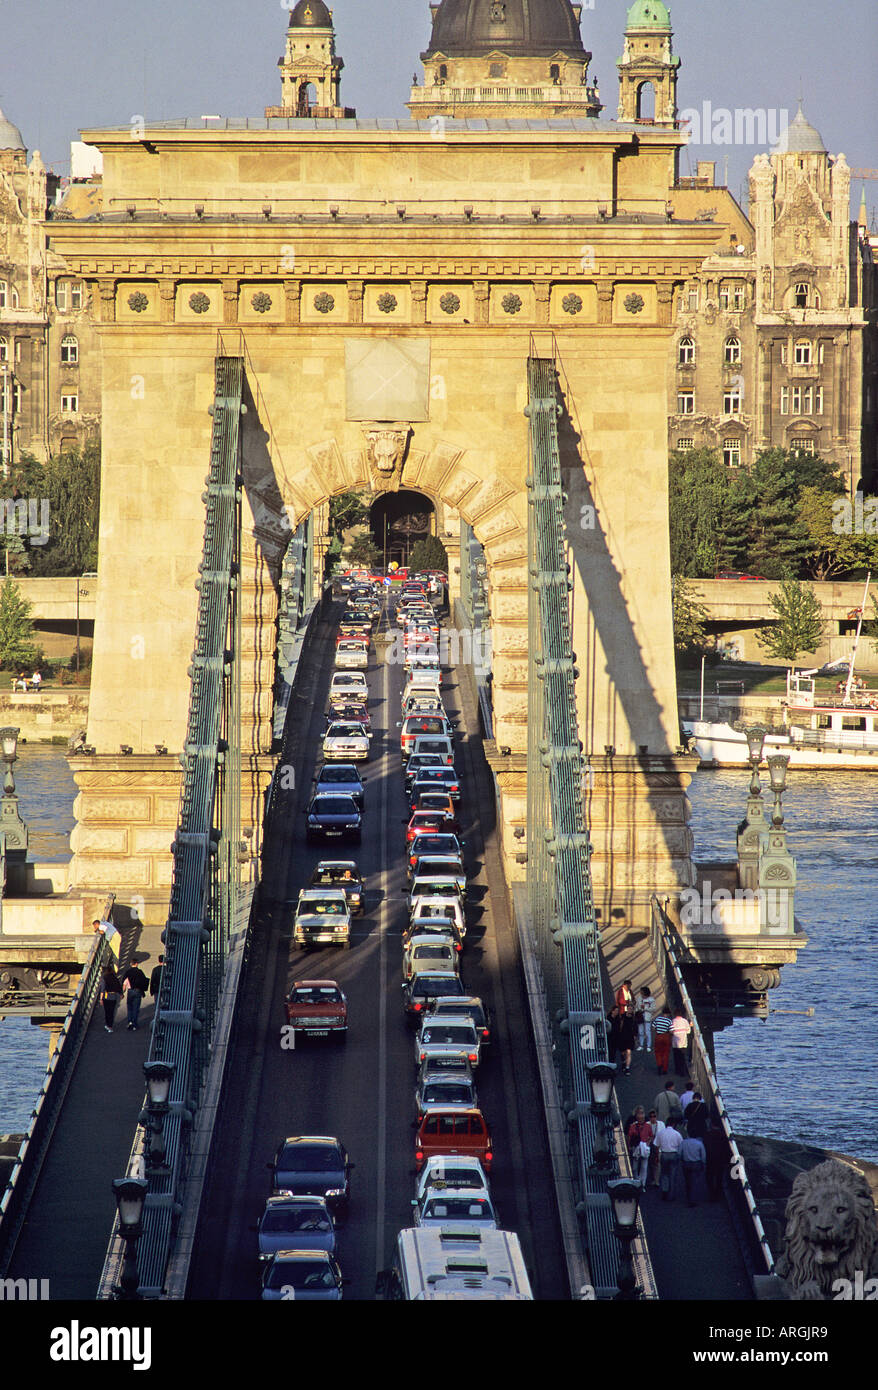 Verkehr Reise langsam über die Kettenbrücke Lanc hid Budapest s erste dauerhafte steinerne Brücke über die Donau gebaut zwischen 1839 und 1849 Schwanz Nase Stockfoto